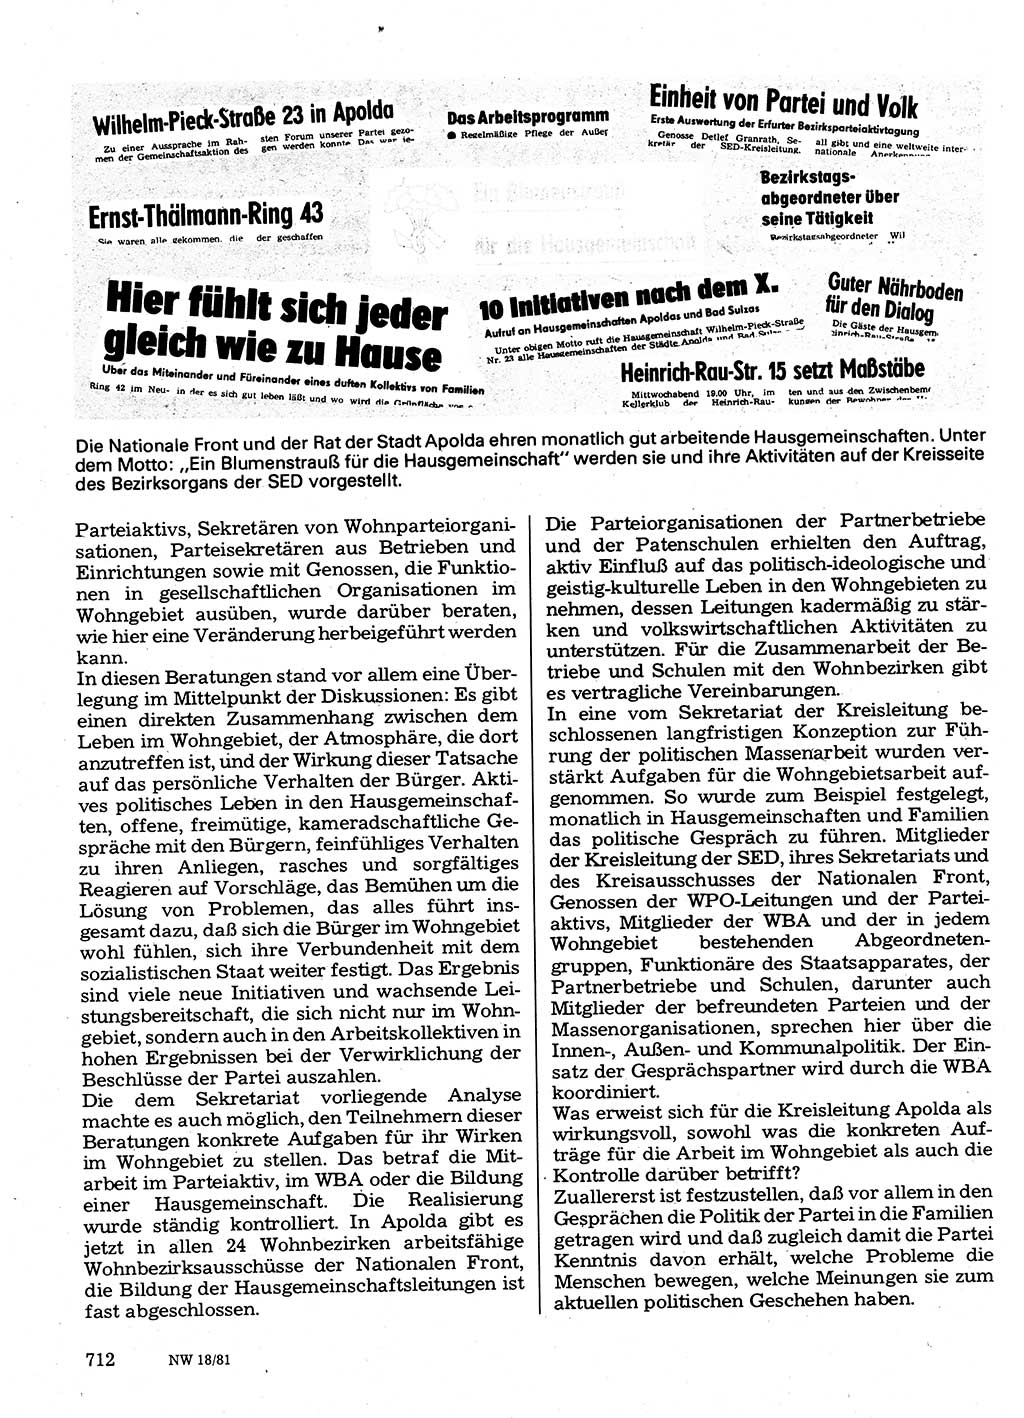 Neuer Weg (NW), Organ des Zentralkomitees (ZK) der SED (Sozialistische Einheitspartei Deutschlands) für Fragen des Parteilebens, 36. Jahrgang [Deutsche Demokratische Republik (DDR)] 1981, Seite 712 (NW ZK SED DDR 1981, S. 712)